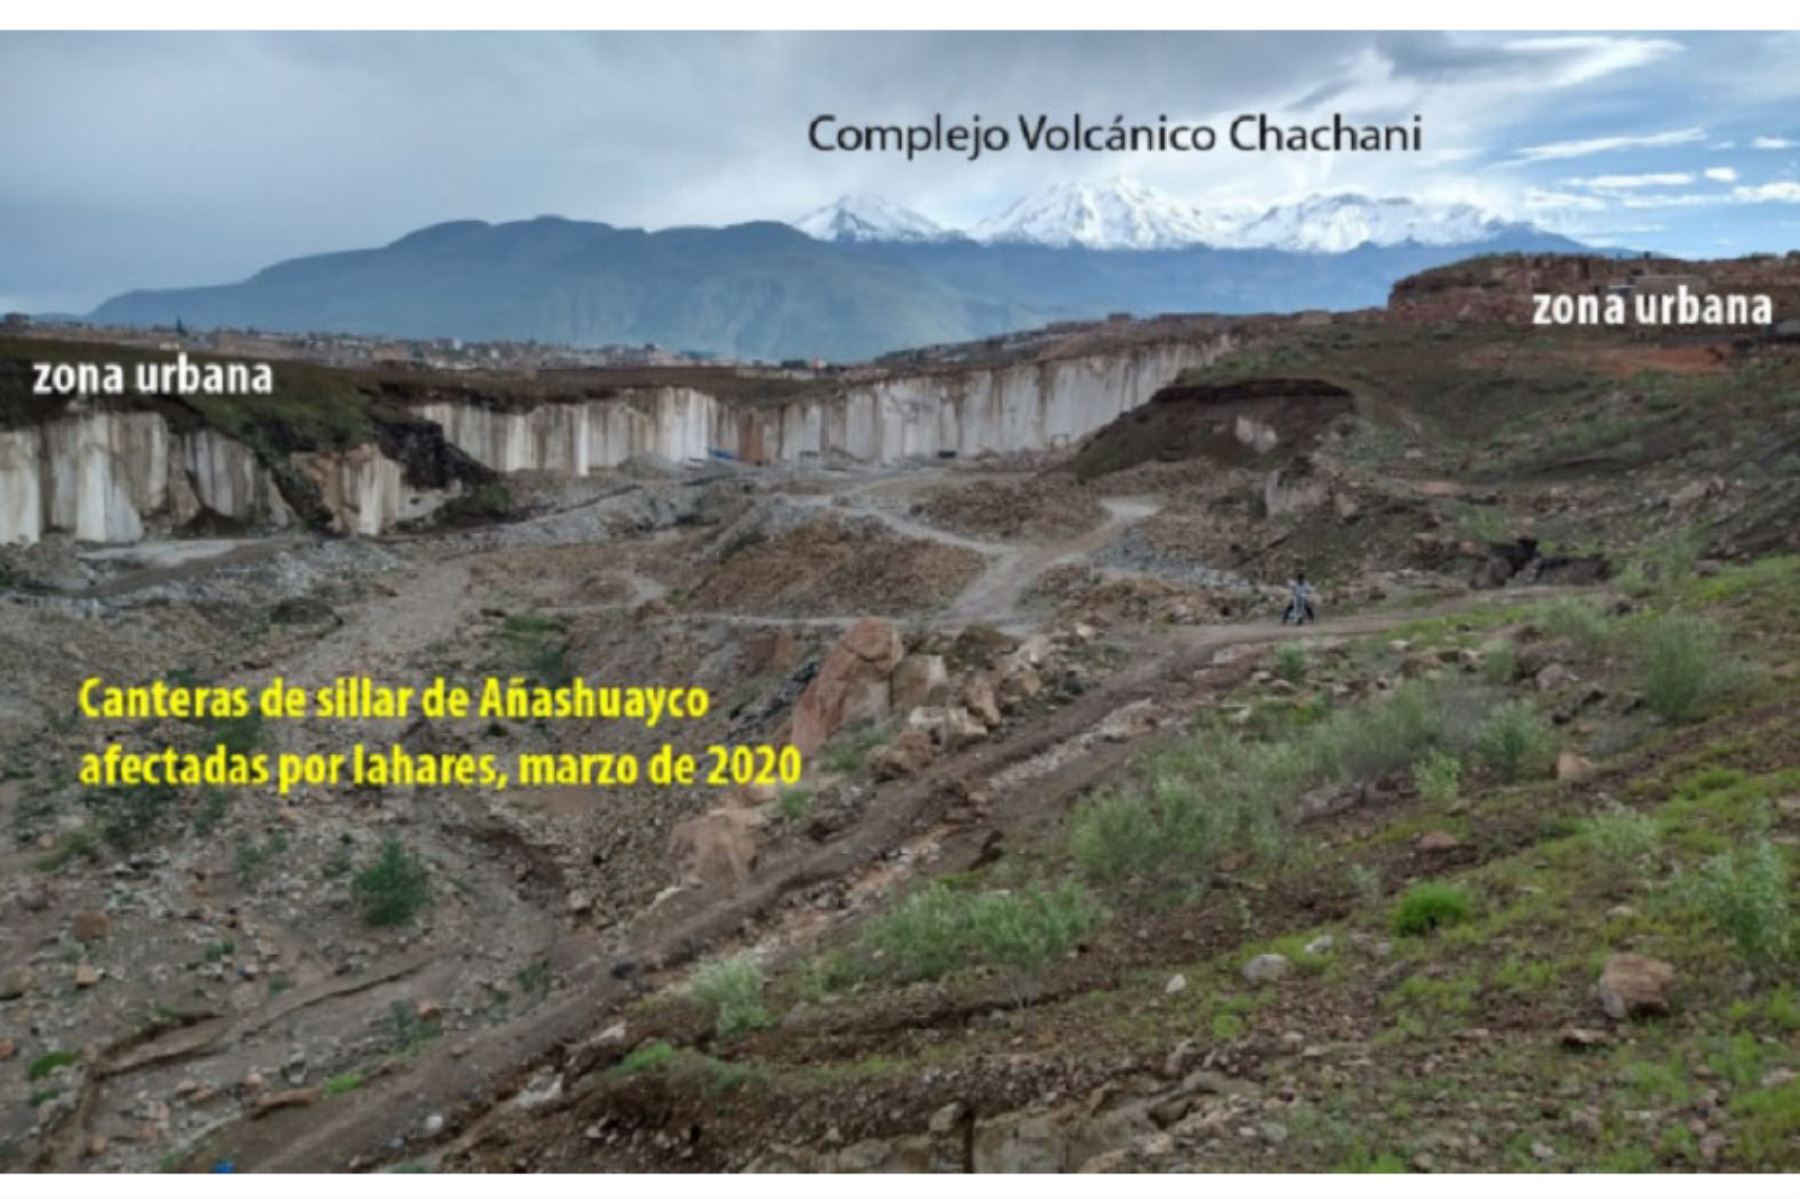 El Instituto Geológico, Minero y Metalúrgico (Ingemmet), a través de su Observatorio Vulcanológico (OVI), viene realizando la evaluación de peligros geológicos del Complejo Volcánico Chachani, considerado su cercanía a la zona urbana de la ciudad.